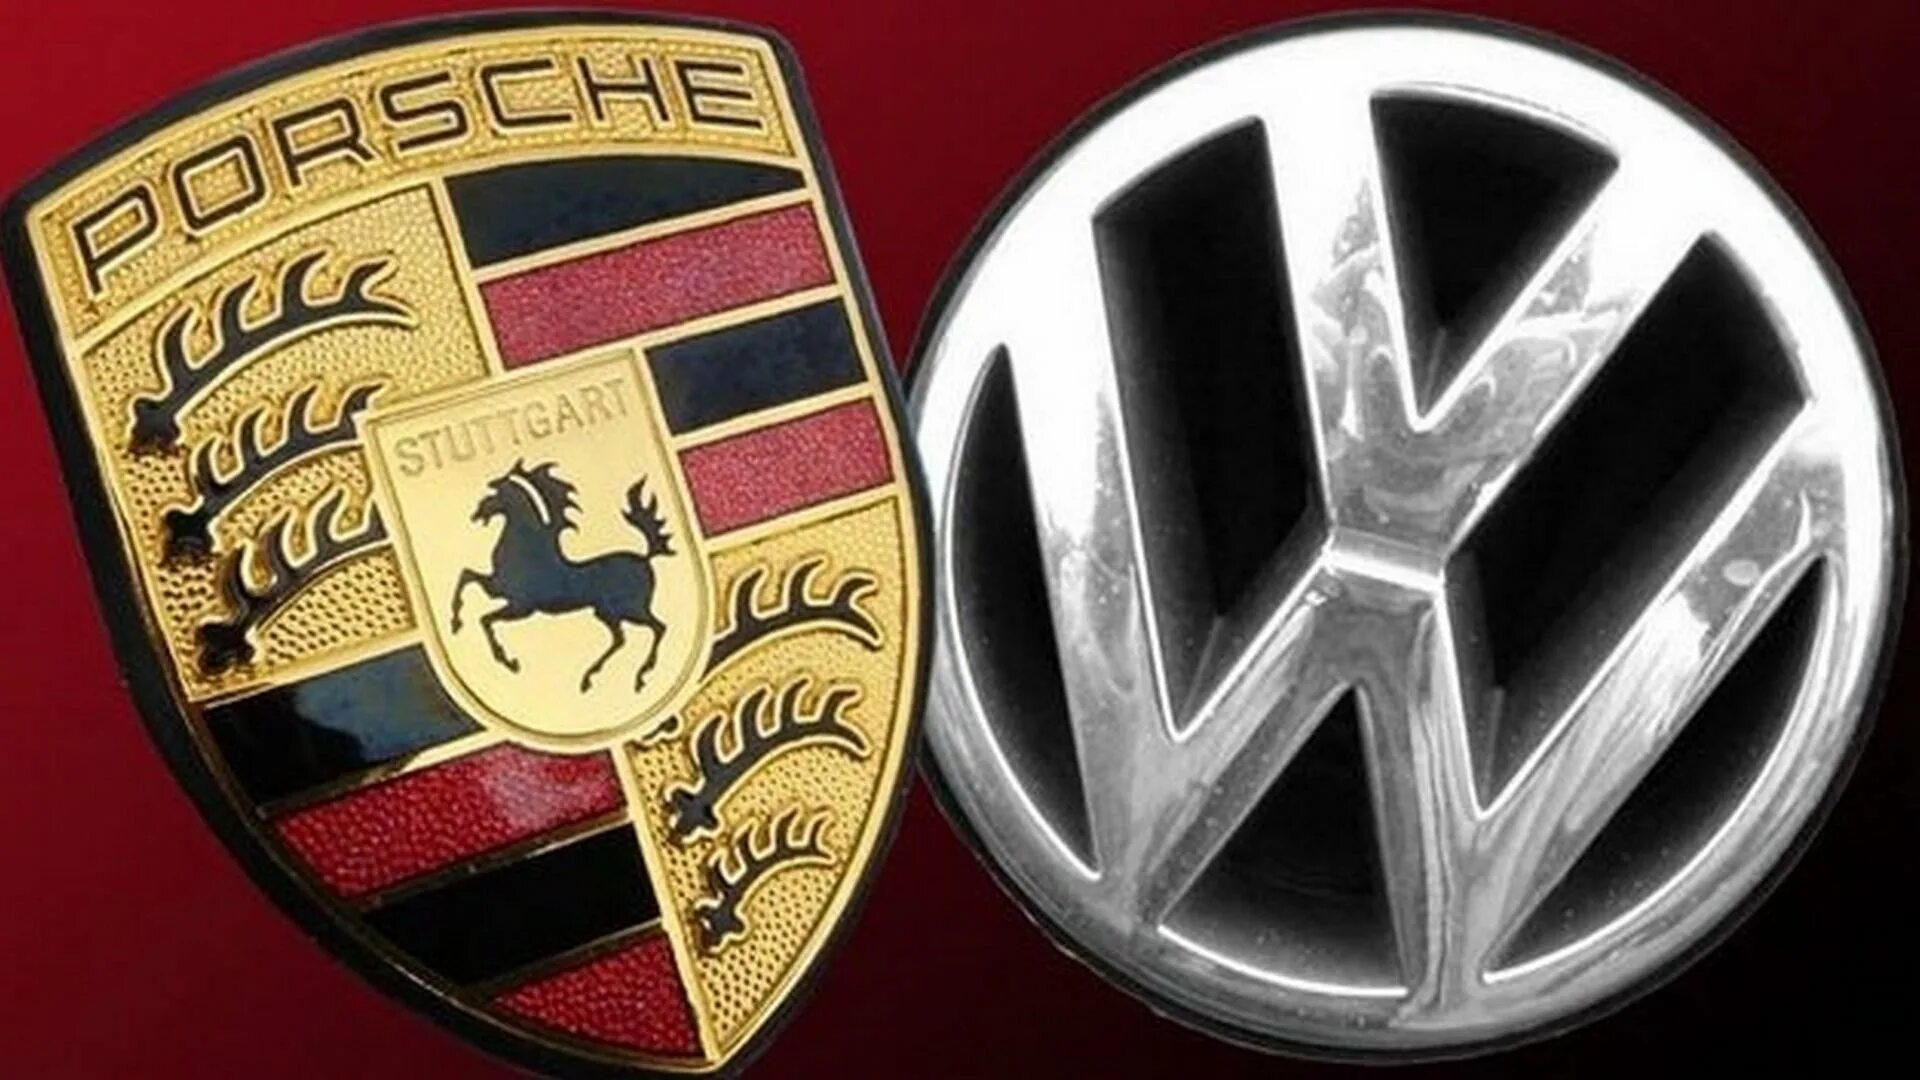 Porsche volkswagen. VW Porsche. Концерн Фольксваген Порше. Слияние Фольксваген и Порше. Volkswagen принадлежит Porsche.